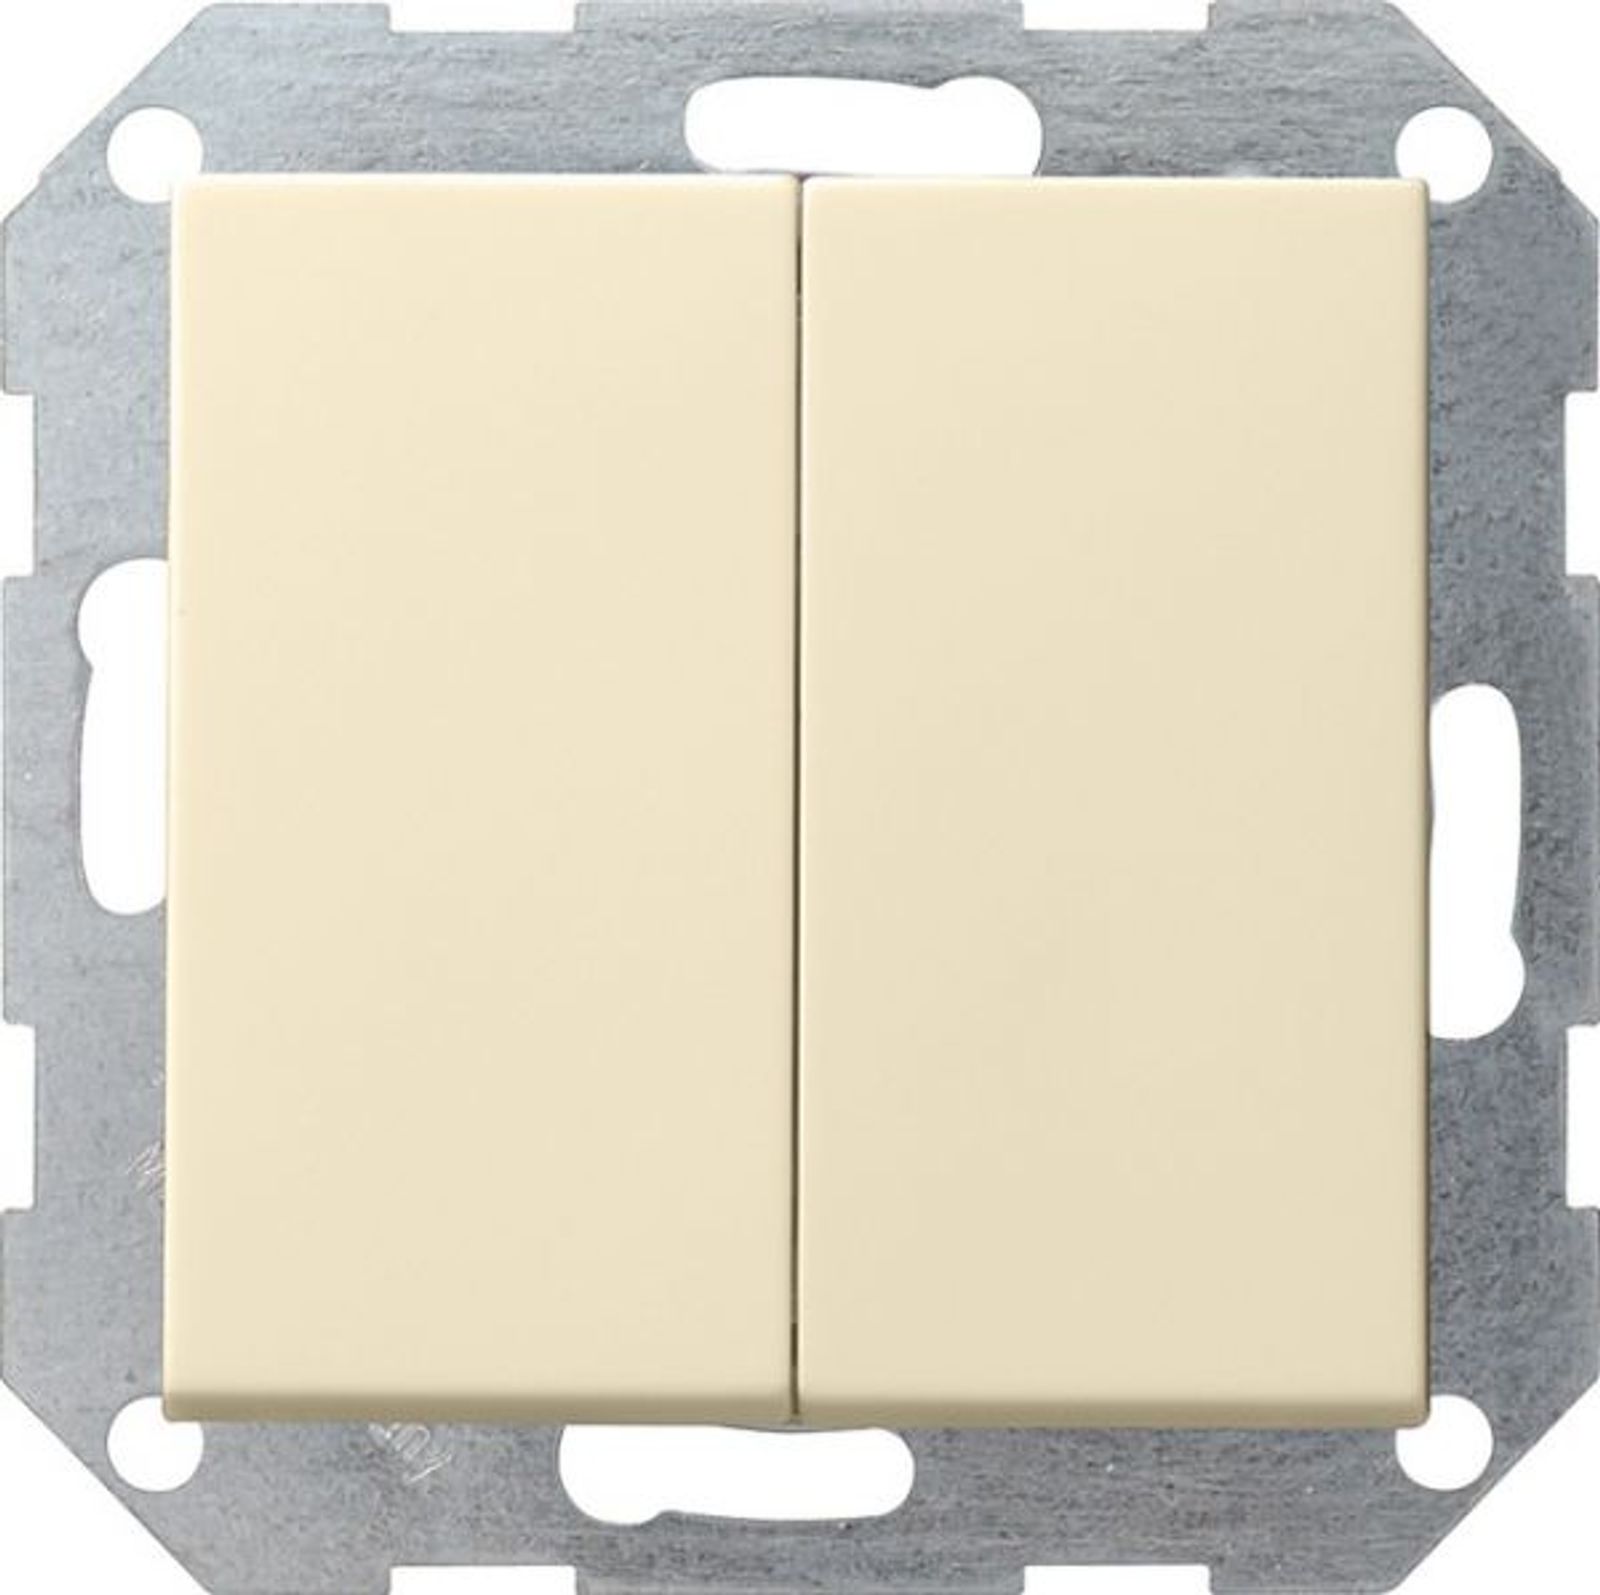 Gira 2-fach-Wechselschalter Taster weiß glänzend System 55 012801 UP IP20 2-fach